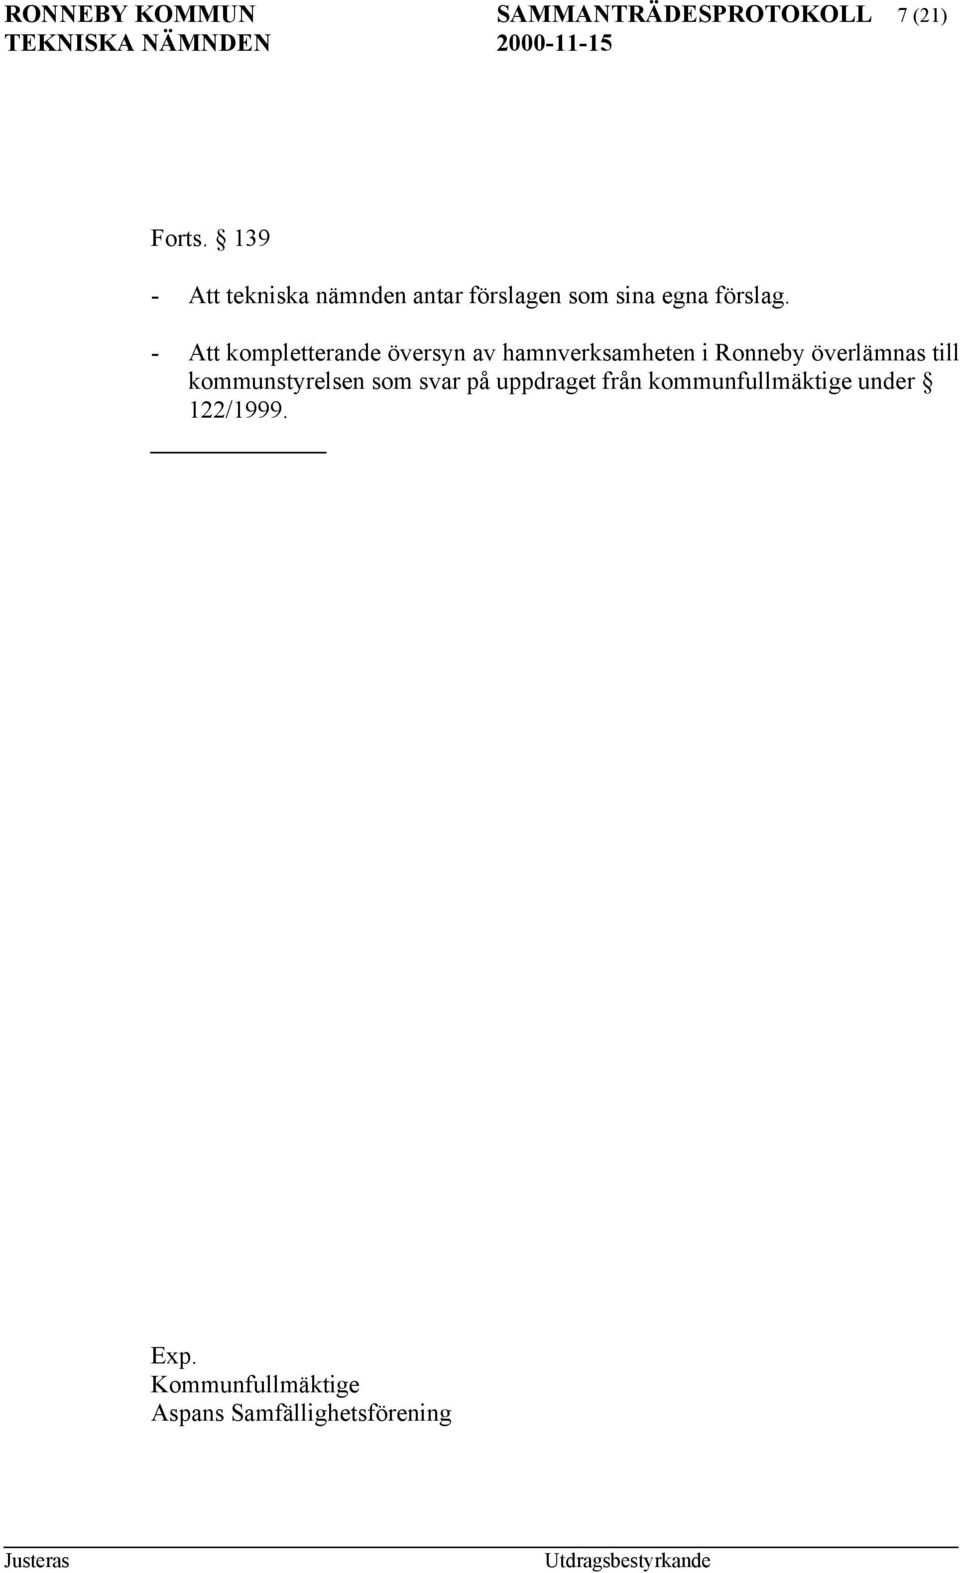 - Att kompletterande översyn av hamnverksamheten i Ronneby överlämnas till